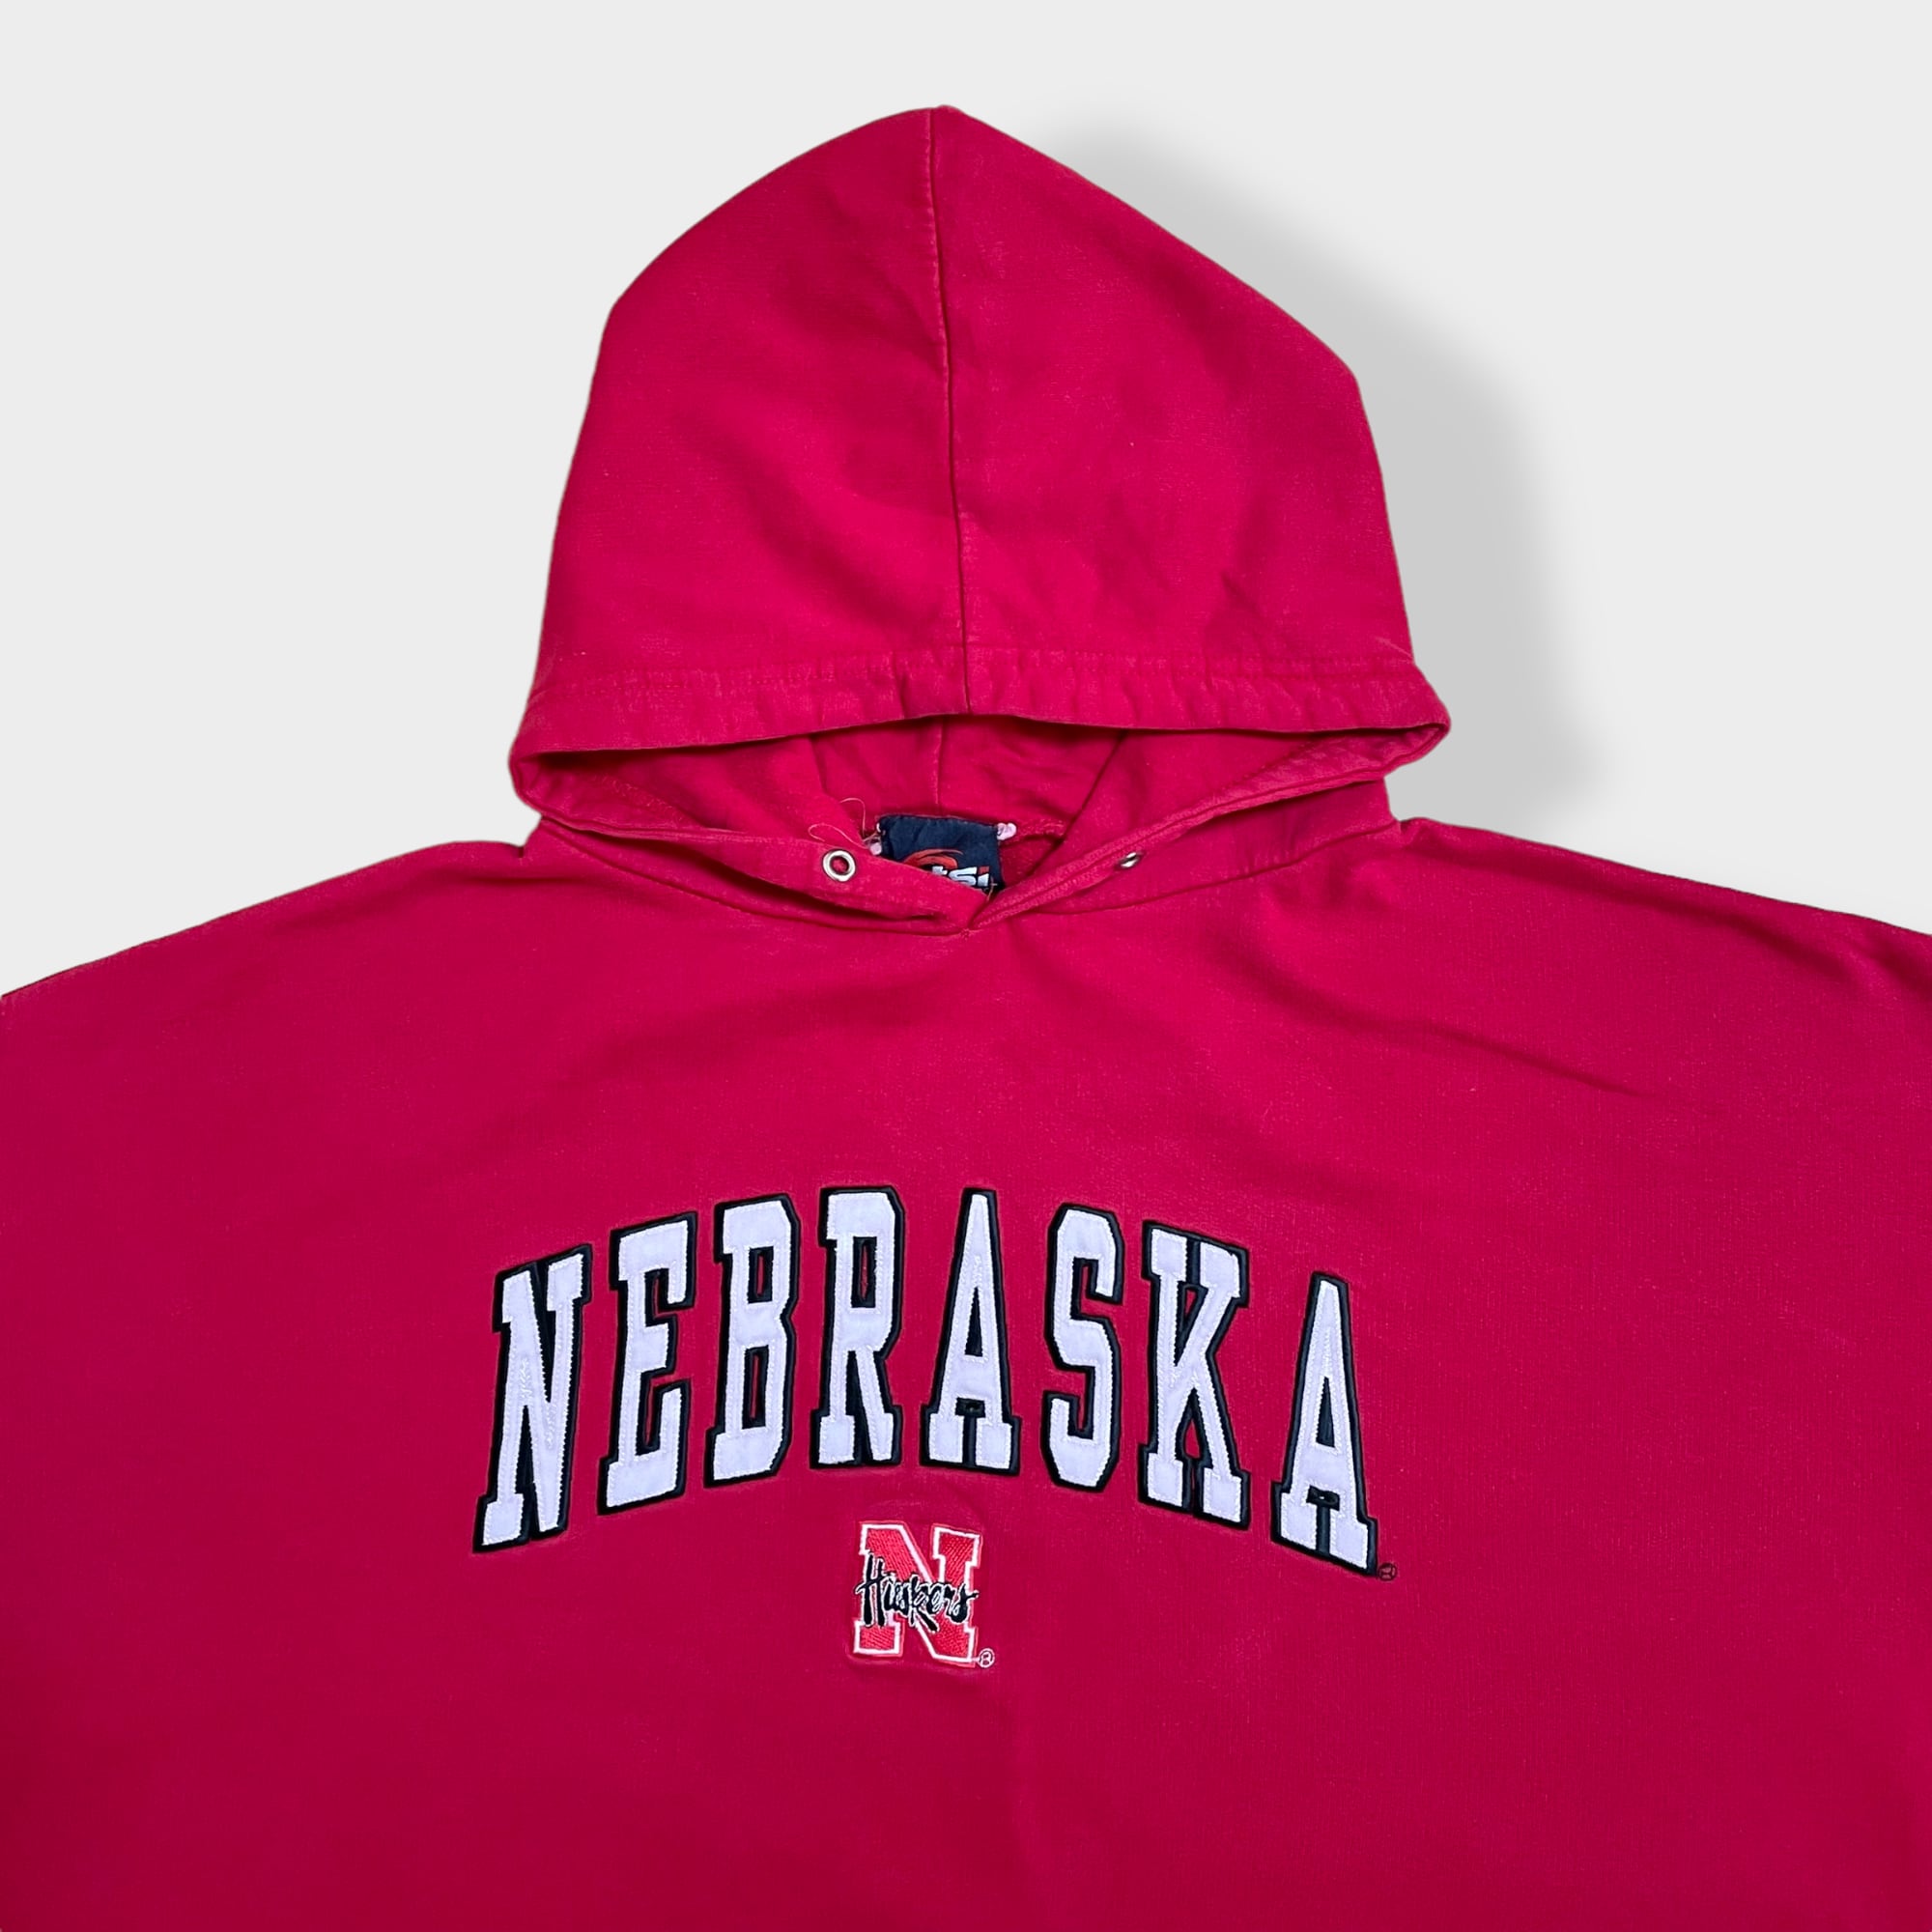 ネブラスカ大学 カレッジロゴ 刺繍 赤×黒 XL プルオーバーナイロンジャケット